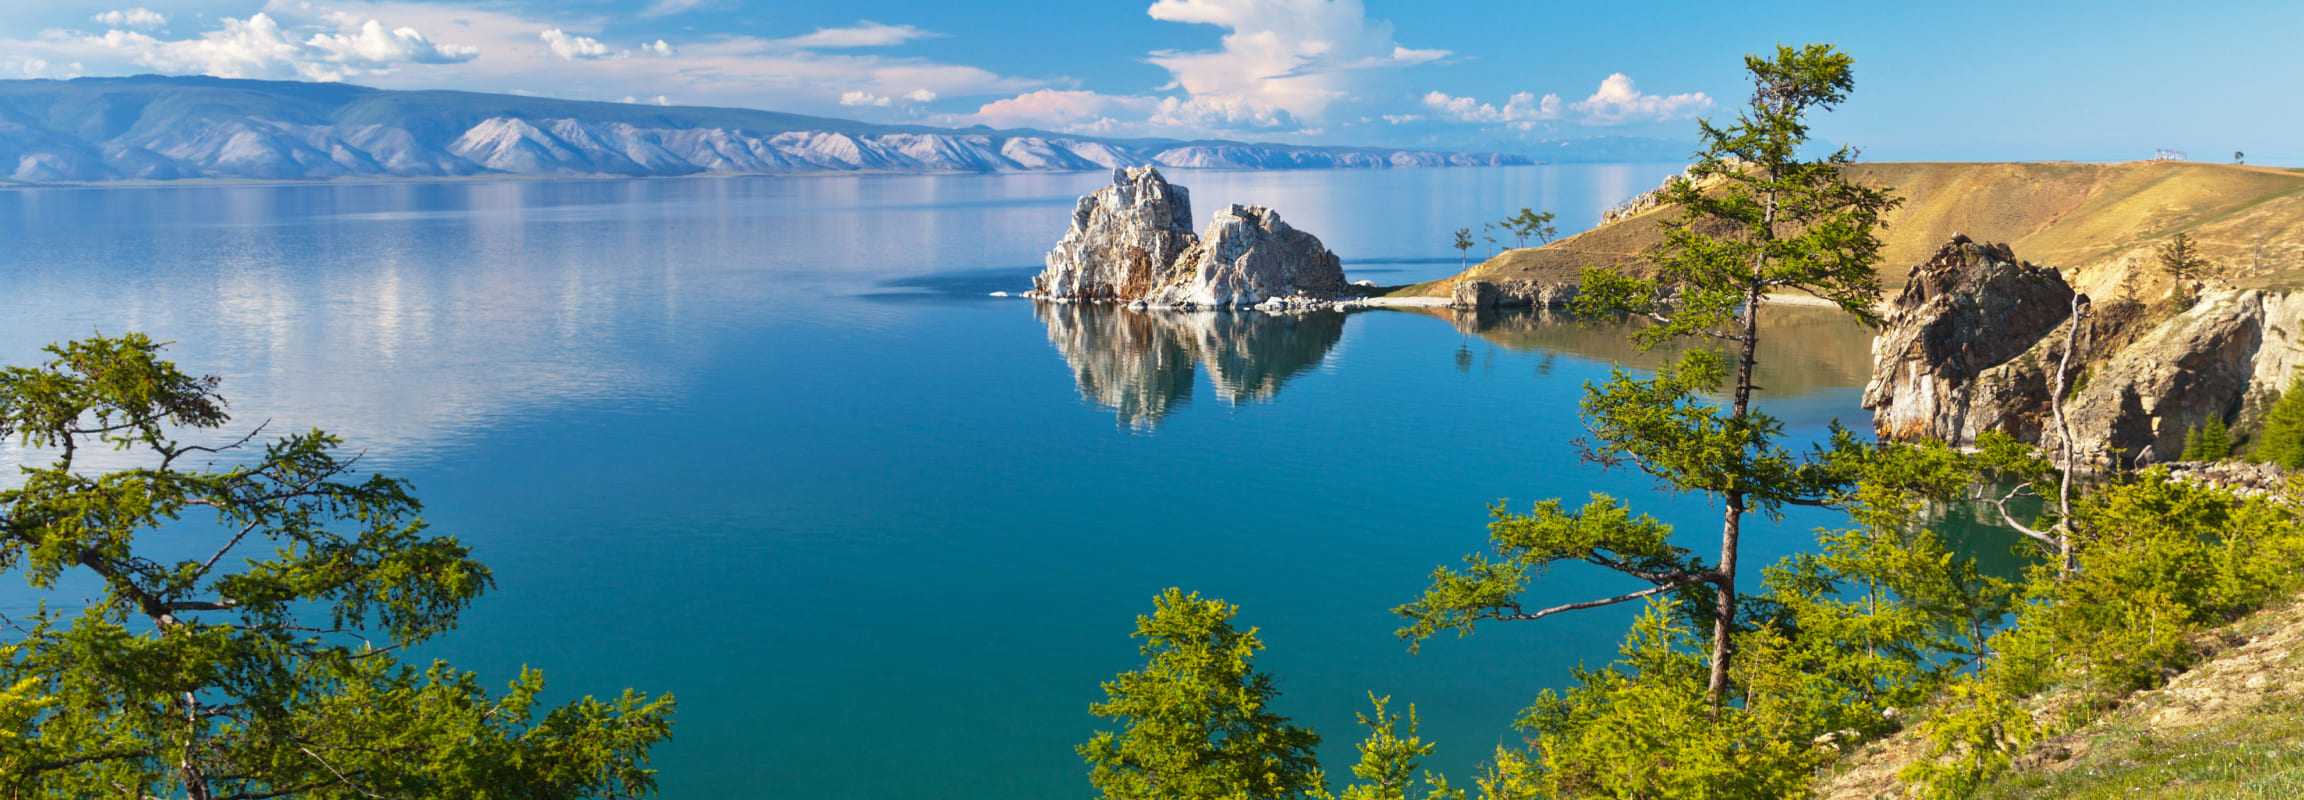 10 самых больших озер россии • всезнаешь.ру